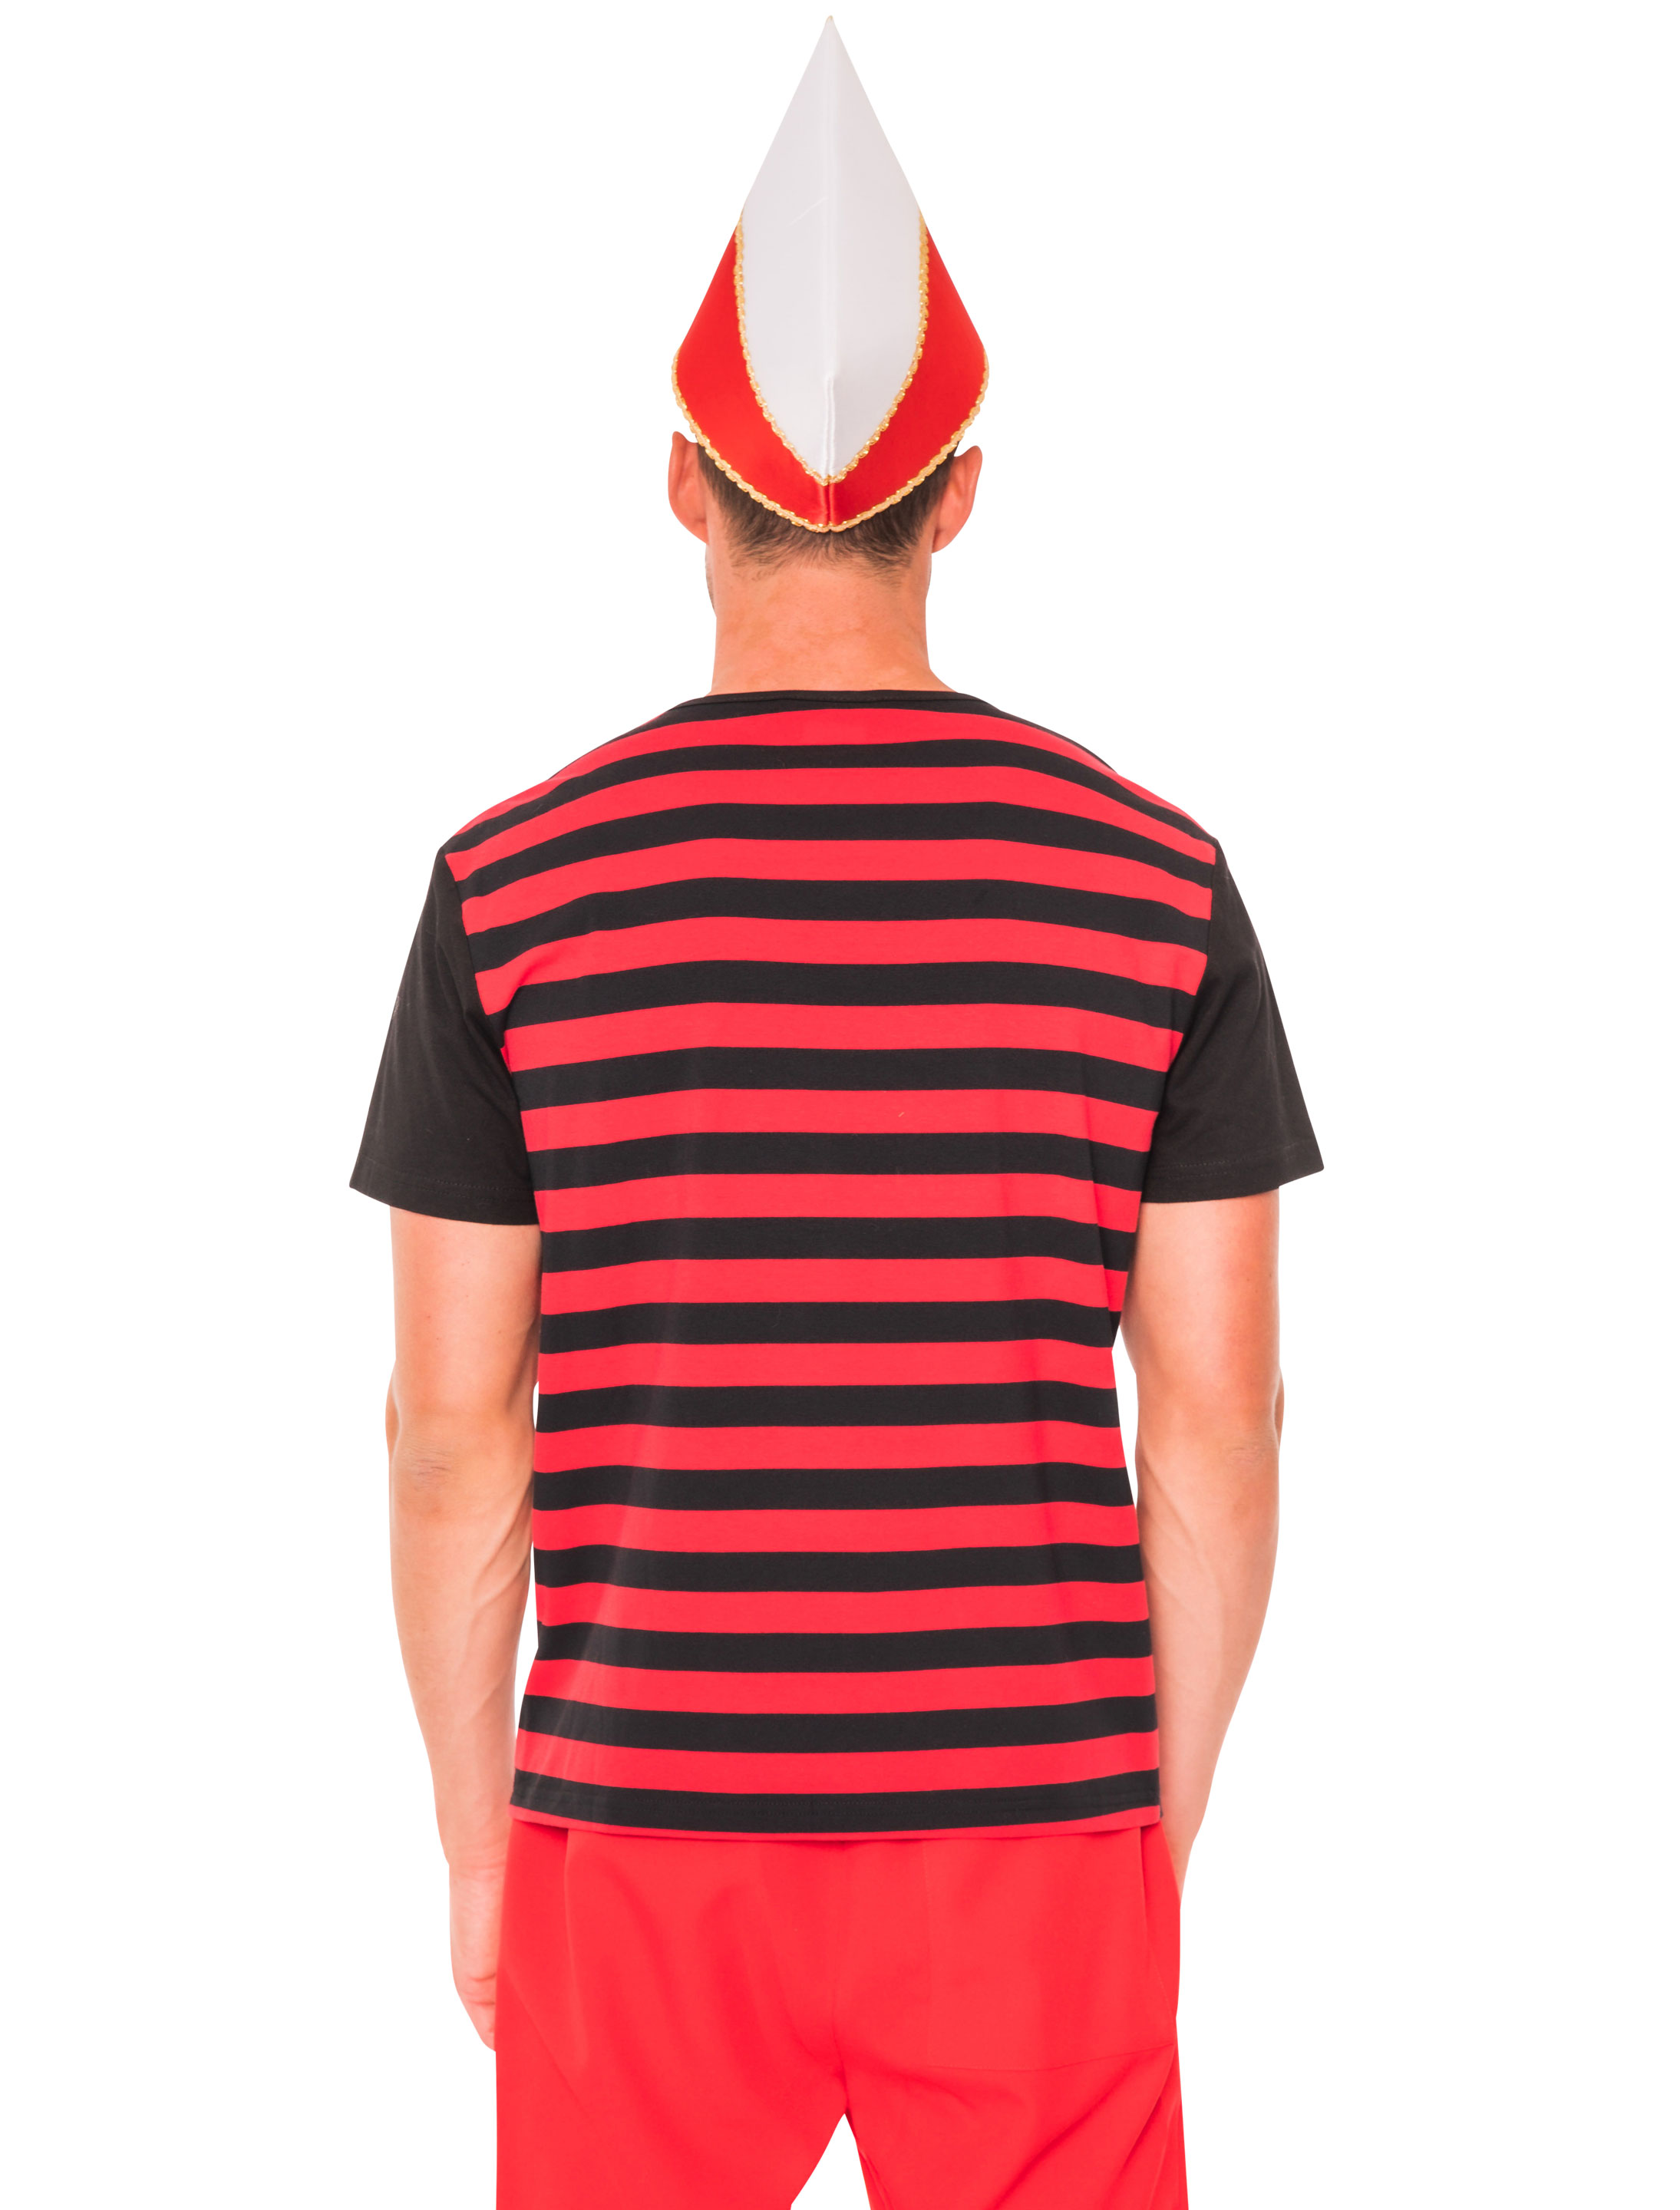 T-Shirt Köln Herren mit Wappen schwarz/rot 2XL